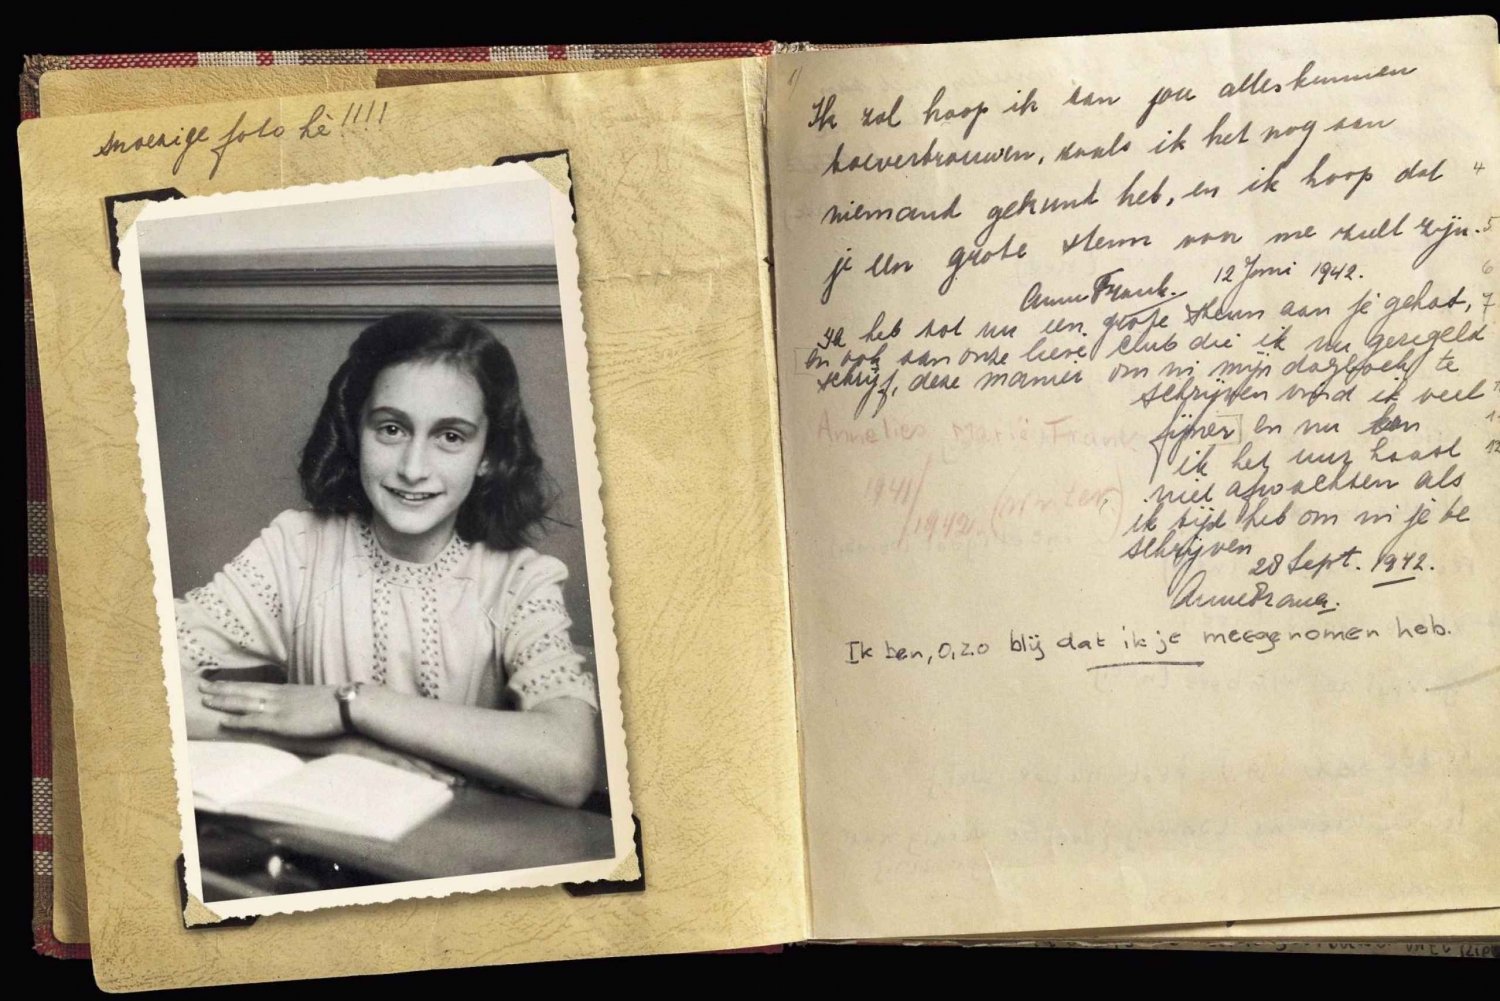 Amsterdam: Private Anne Frank und Jüdisches Viertel Tour